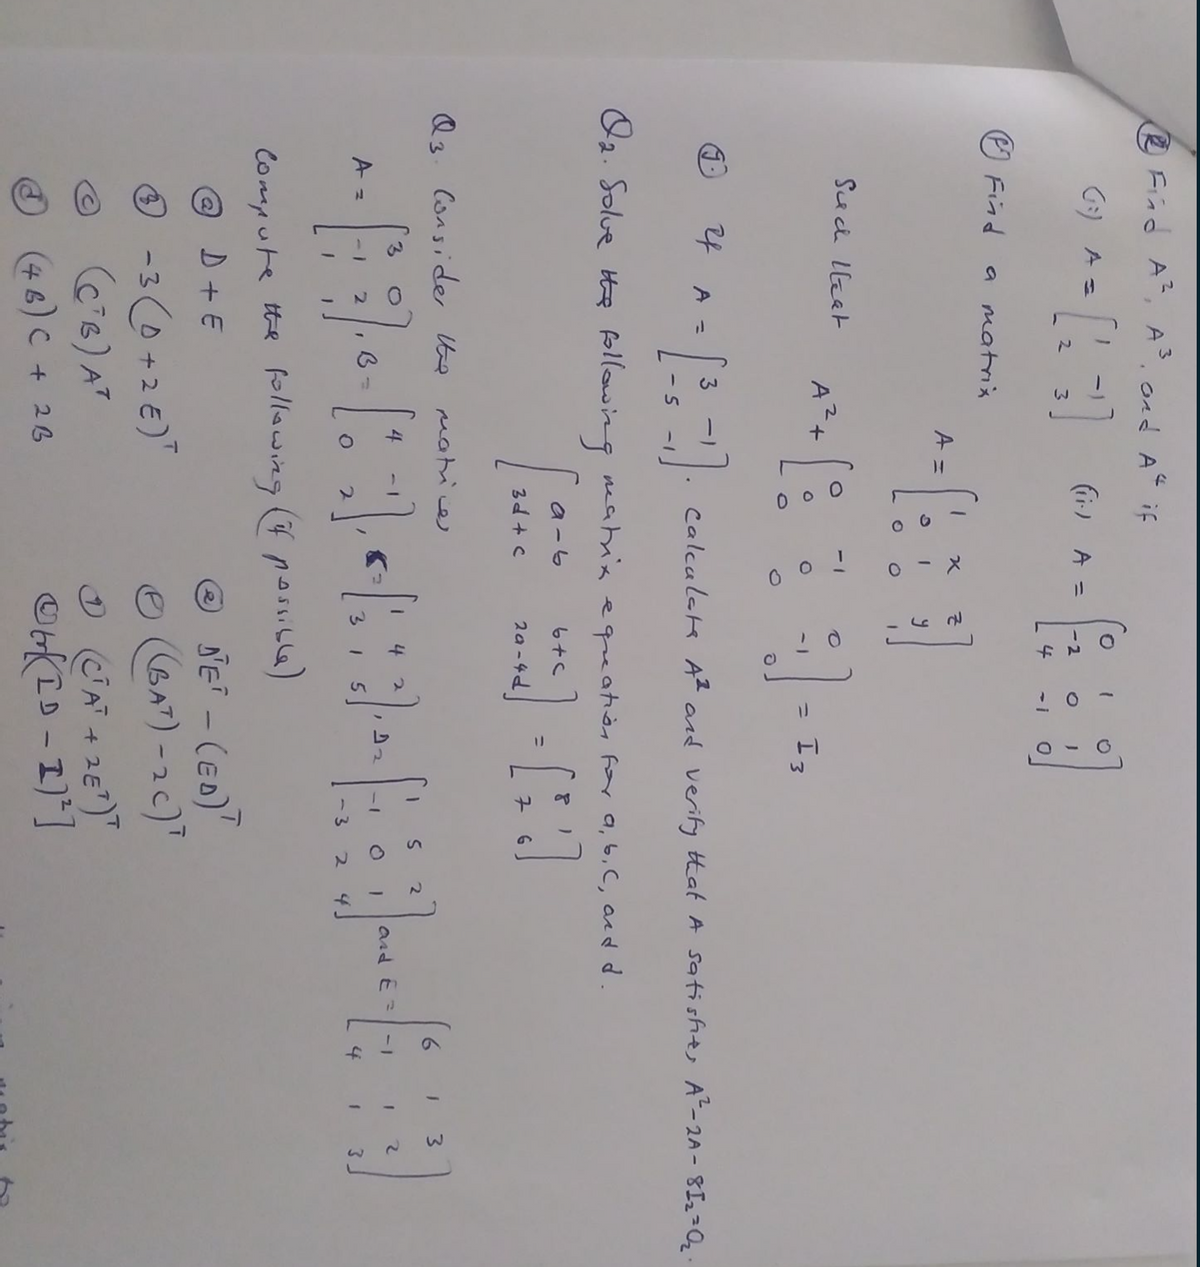 3)
O Fiad A, A. ond AC if
G:) A =
(ir) A =
-2
4
-1
O Find
a matrx
A =
Suci llket
= I3
%3D
24
A =
Calculatk A2 and verify that A satishts A-2A- 8I22Q.
- 5
1-
U2. Solue he following eatnis equeatièn for a, 6, C, acd d.
a -6
%3D
3d + c
Q3. Consider te matice
6.
3.
4
4
and E =
-1
-I O I
3.
I 5
4
3.
-3
4.
Compute the fllawing (f possib6)
@ D + E
O NE - (ED)"
-3 (0+2€)"
C6) AT
CAT + 2E)"
ID
(46)C+26
